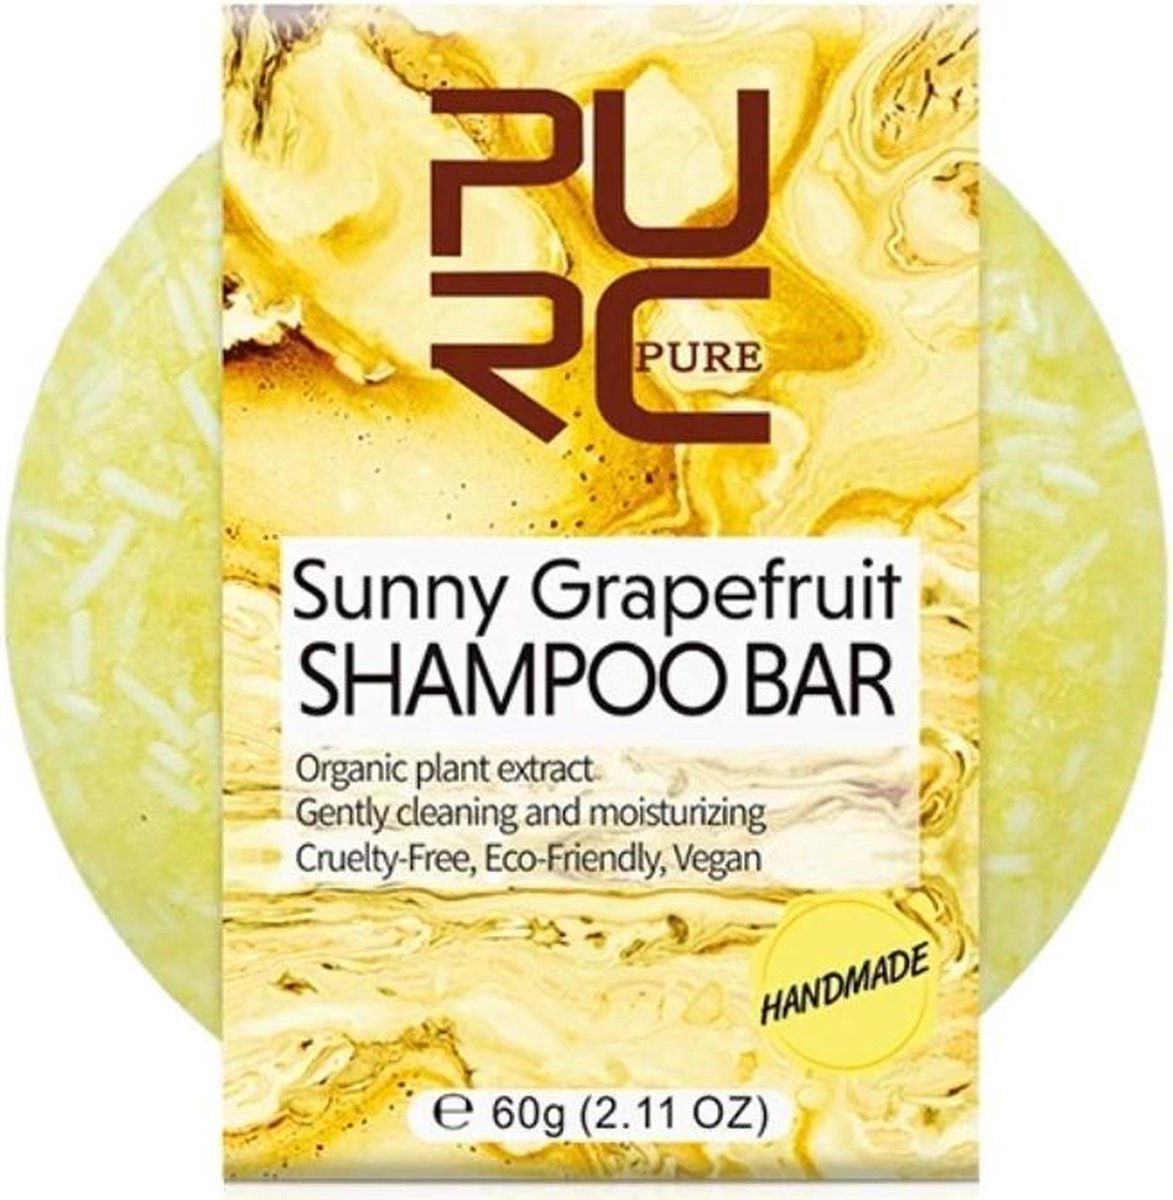 Handmade shampoo bar - Sunny grapefruit